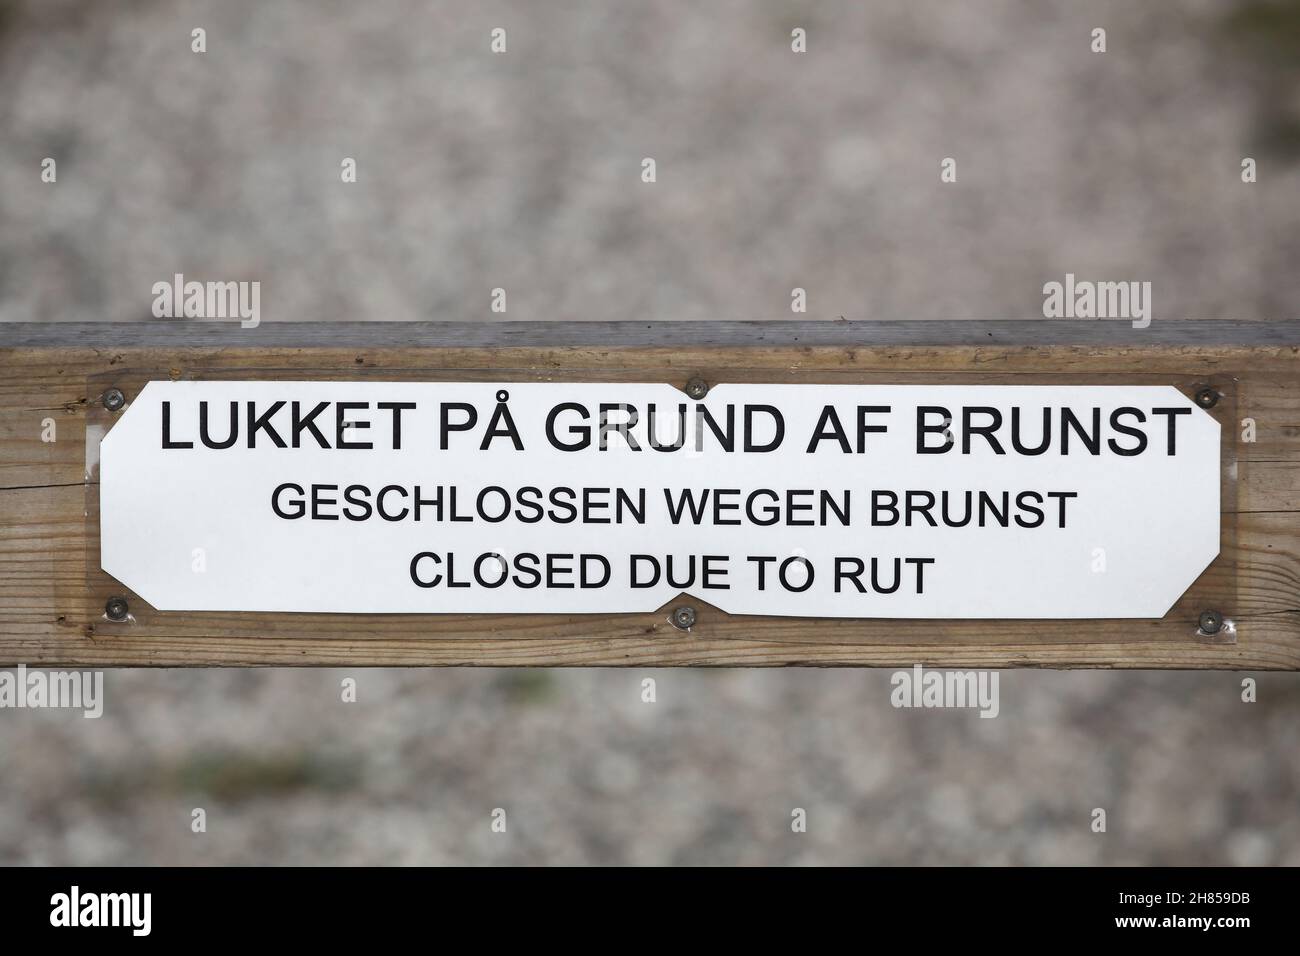 Chiusura a causa di un cartello con la scritta "rut" su una recinzione in lingua danese, tedesca e inglese Foto Stock